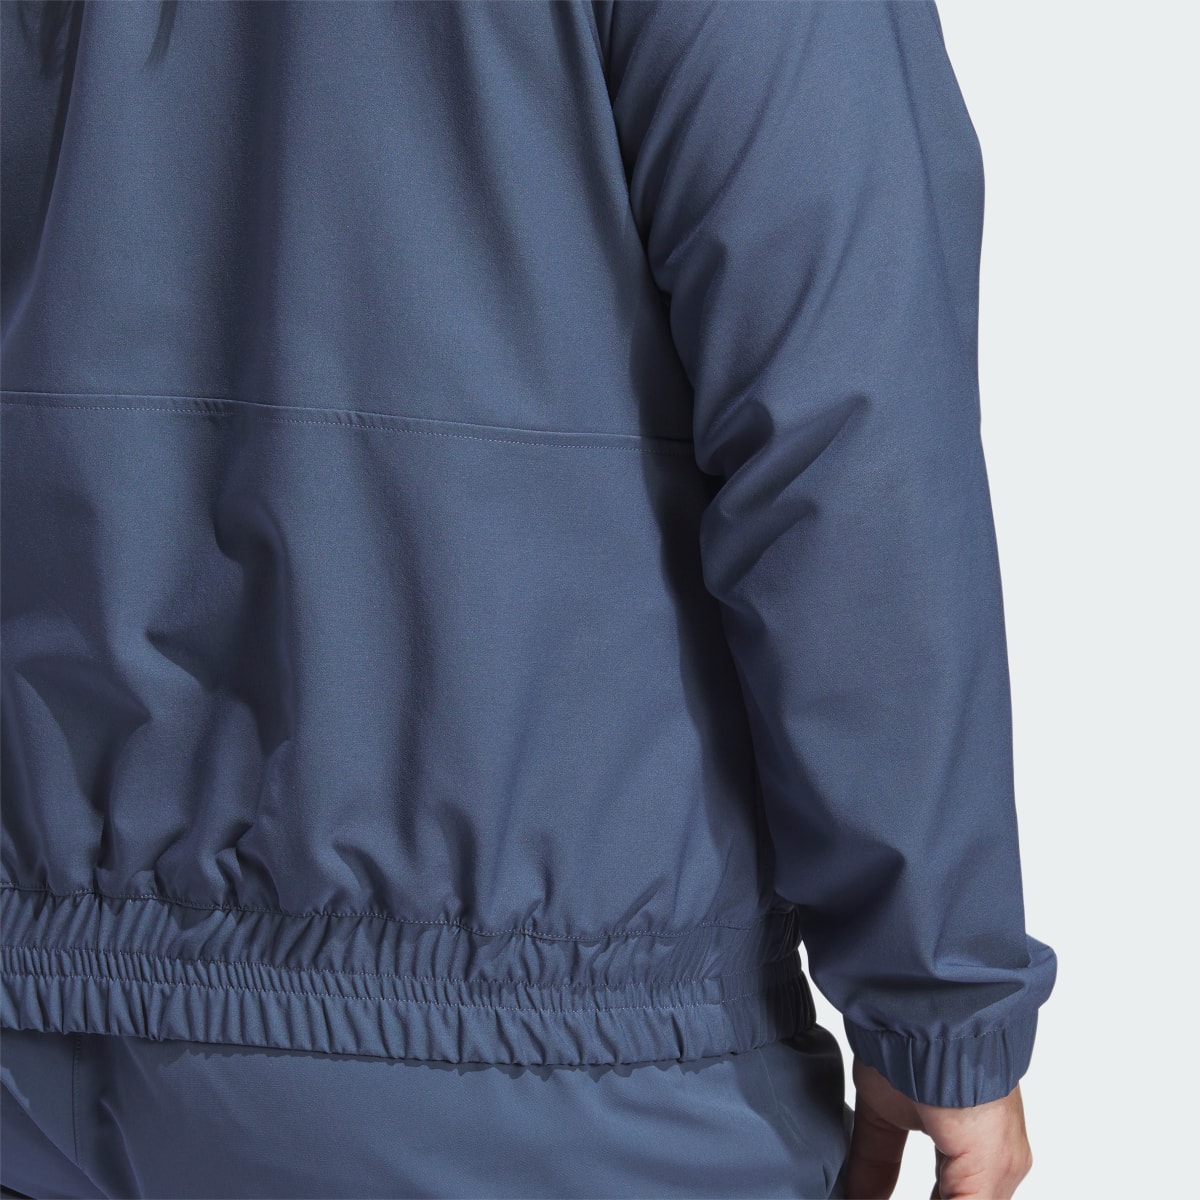 Adidas Women's Ultimate365 Novelty Jacket (Plus Size). 7